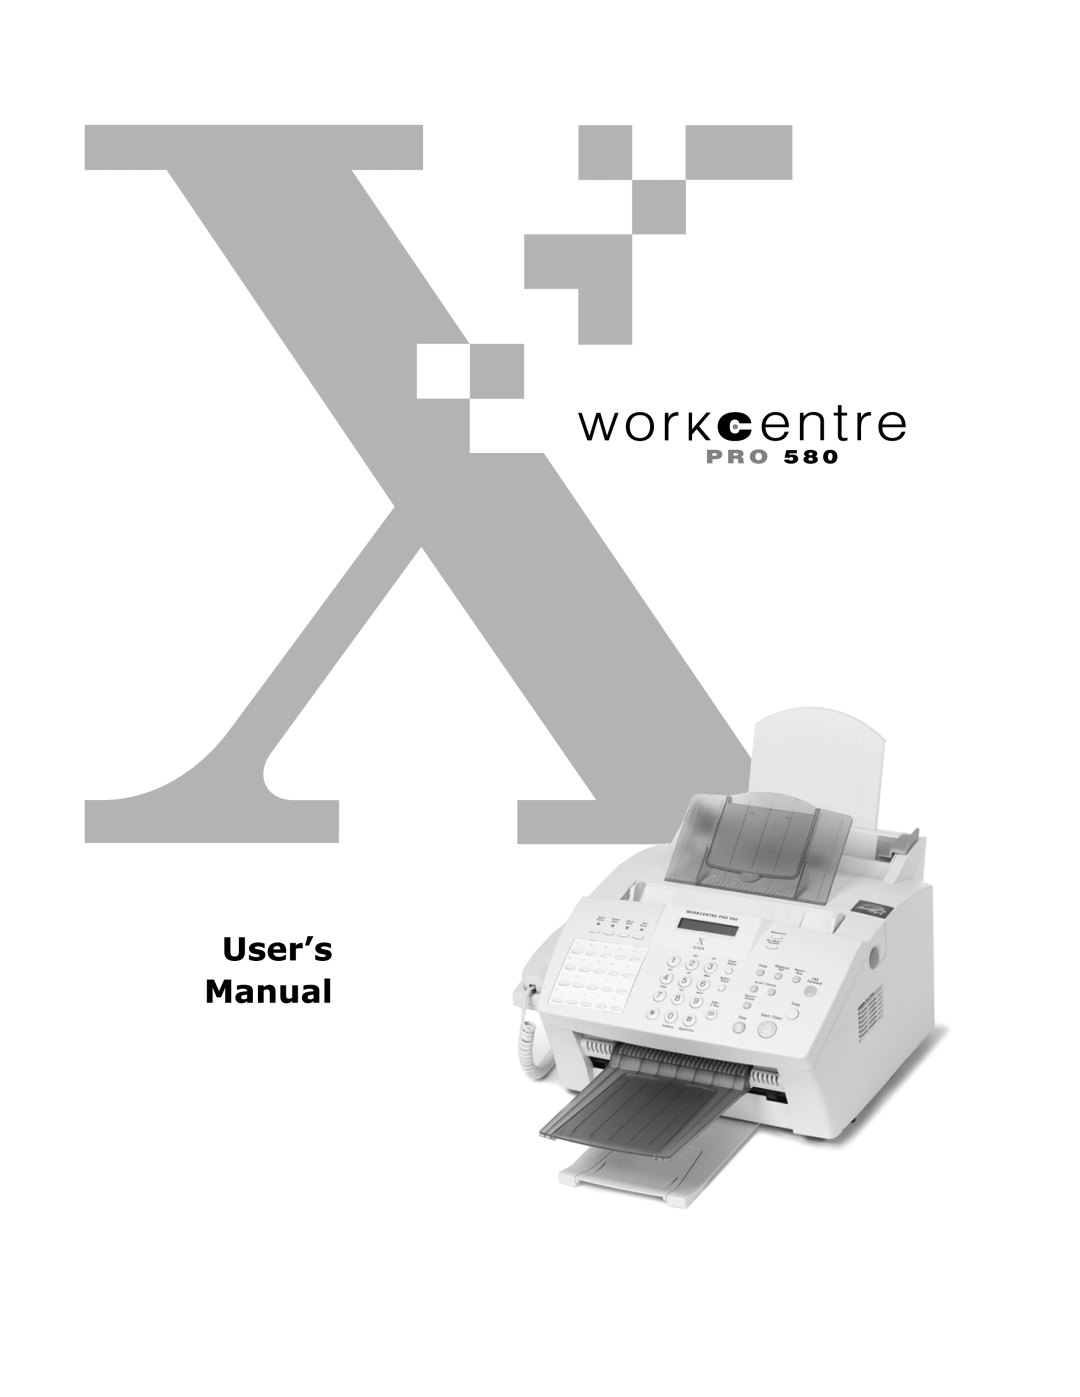 Xerox Pro 580 manual 